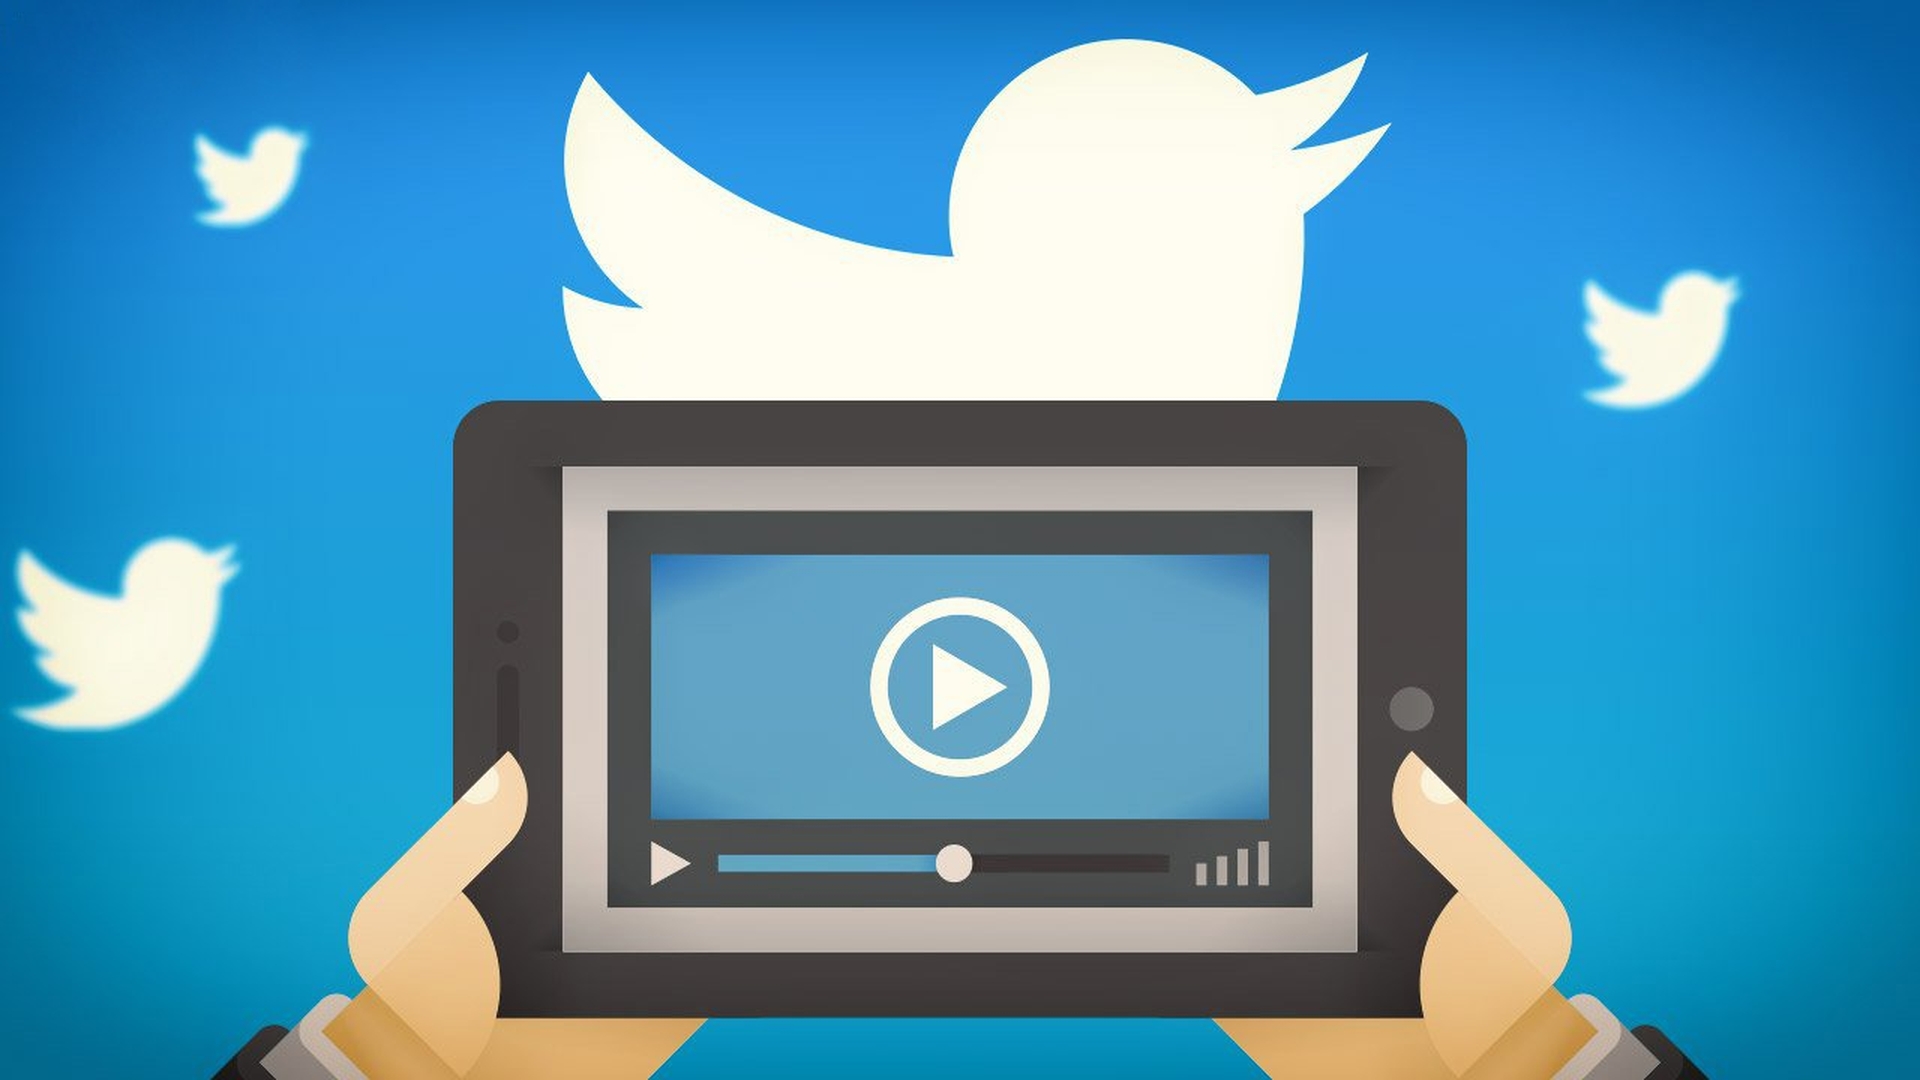 Aujourd'hui, nous allons vous expliquer comment intégrer des vidéos dans Twitter sur votre PC, iPhone ou Android, ainsi que vous montrer comment intégrer des vidéos Youtube dans vos tweets.